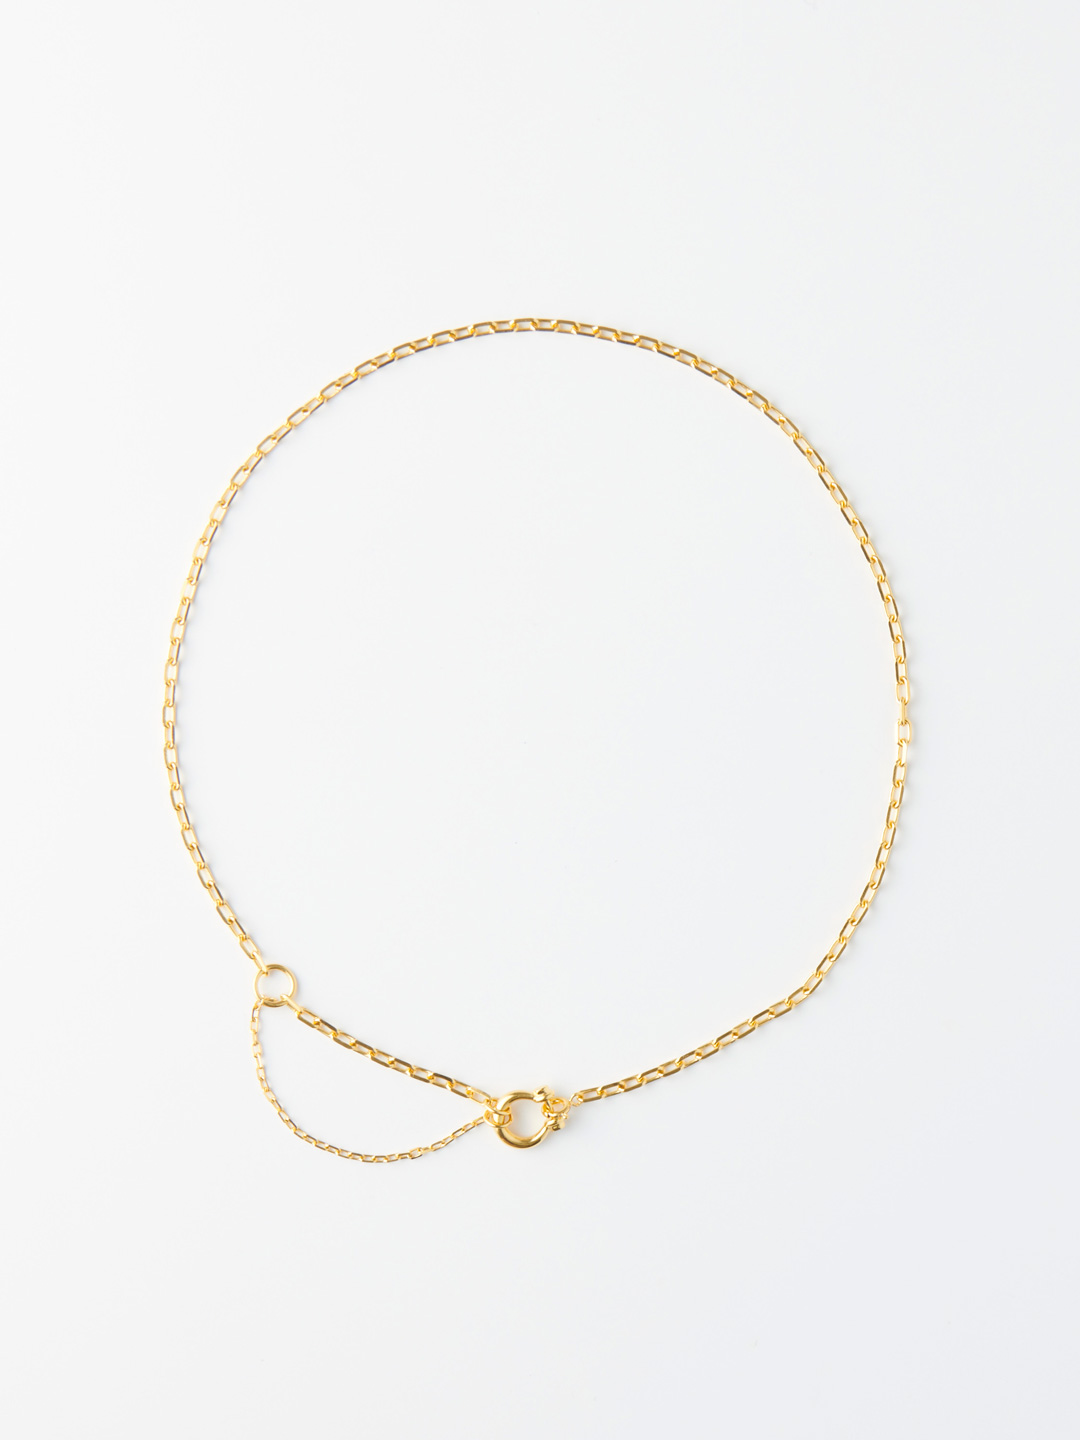 Jordan 48 Necklace - Yellow Gold